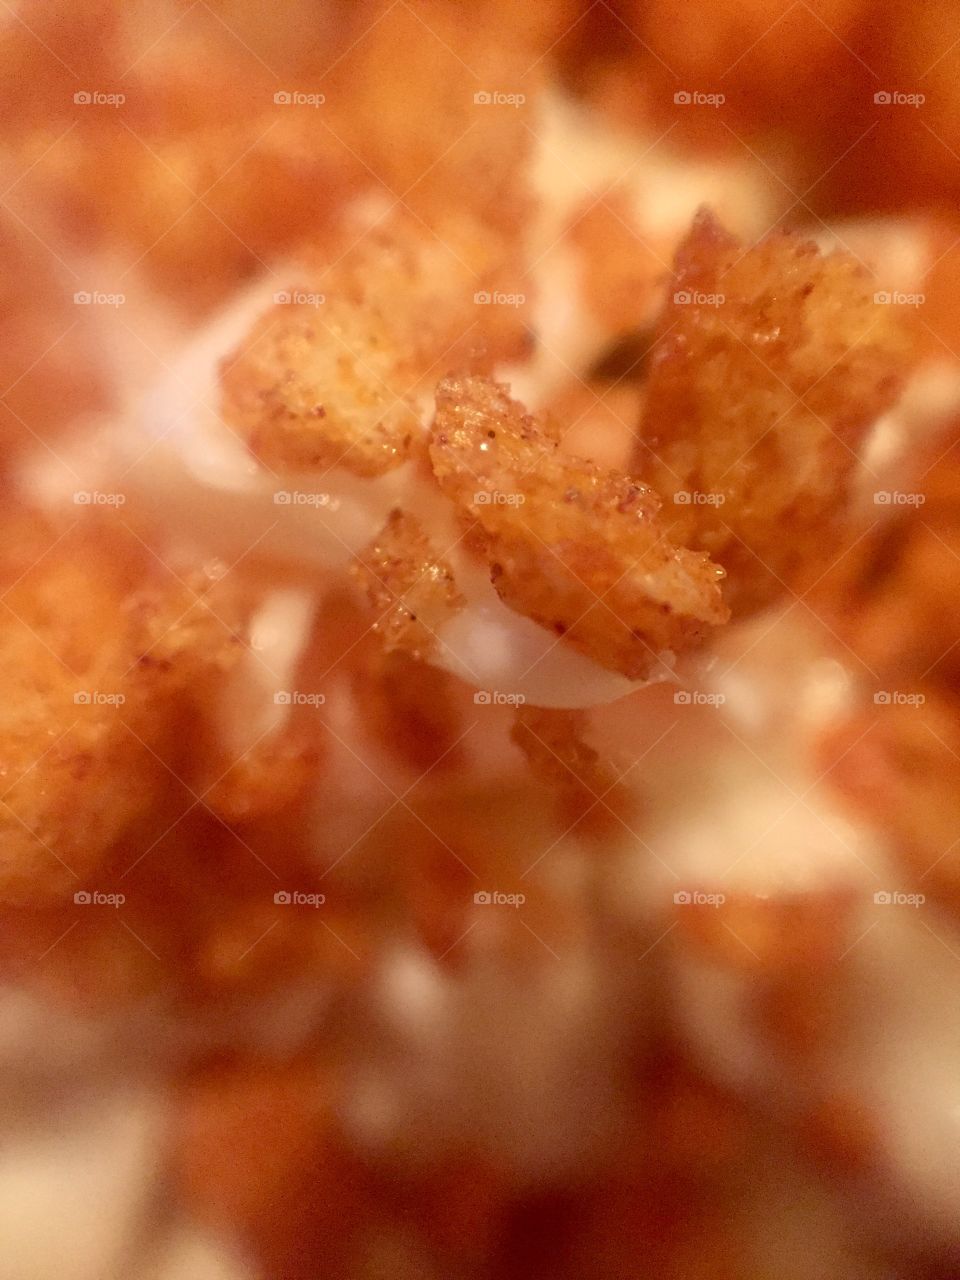 Bacon bits on coleslaw macro